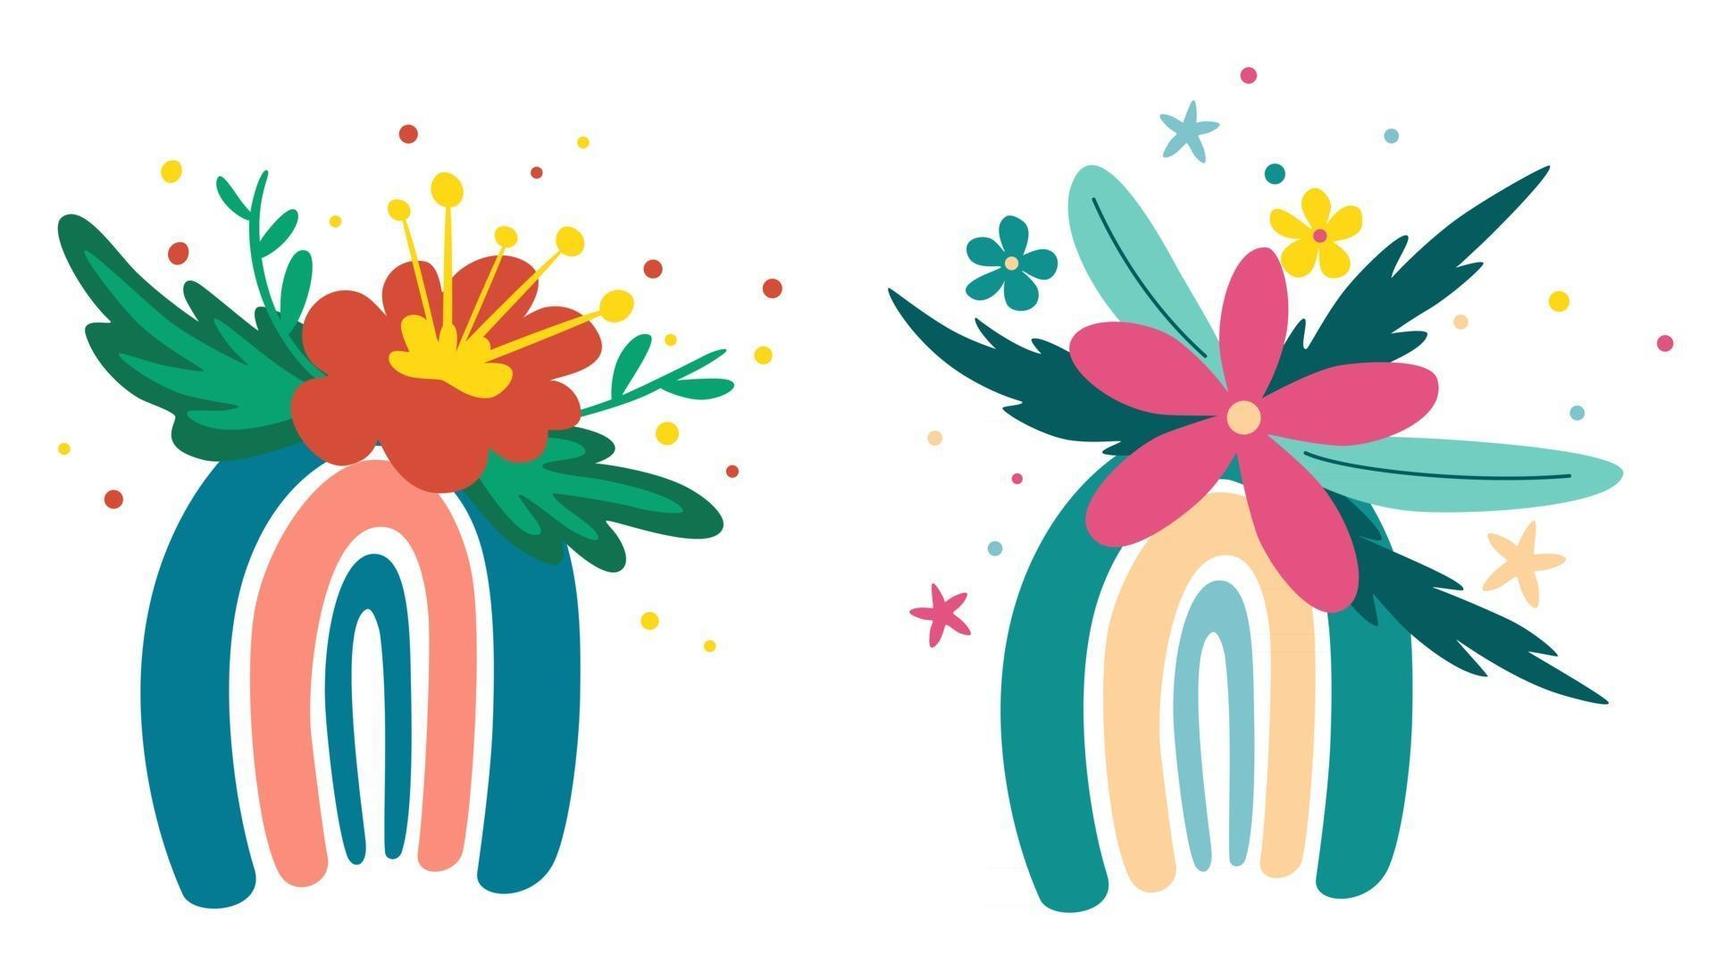 arco iris con flores conjunto flores de primavera ramas florecientes pájaros y mariposas bueno para cartel tarjeta invitación volante pancarta cartel folleto ilustración vectorial en estilo de dibujos animados vector